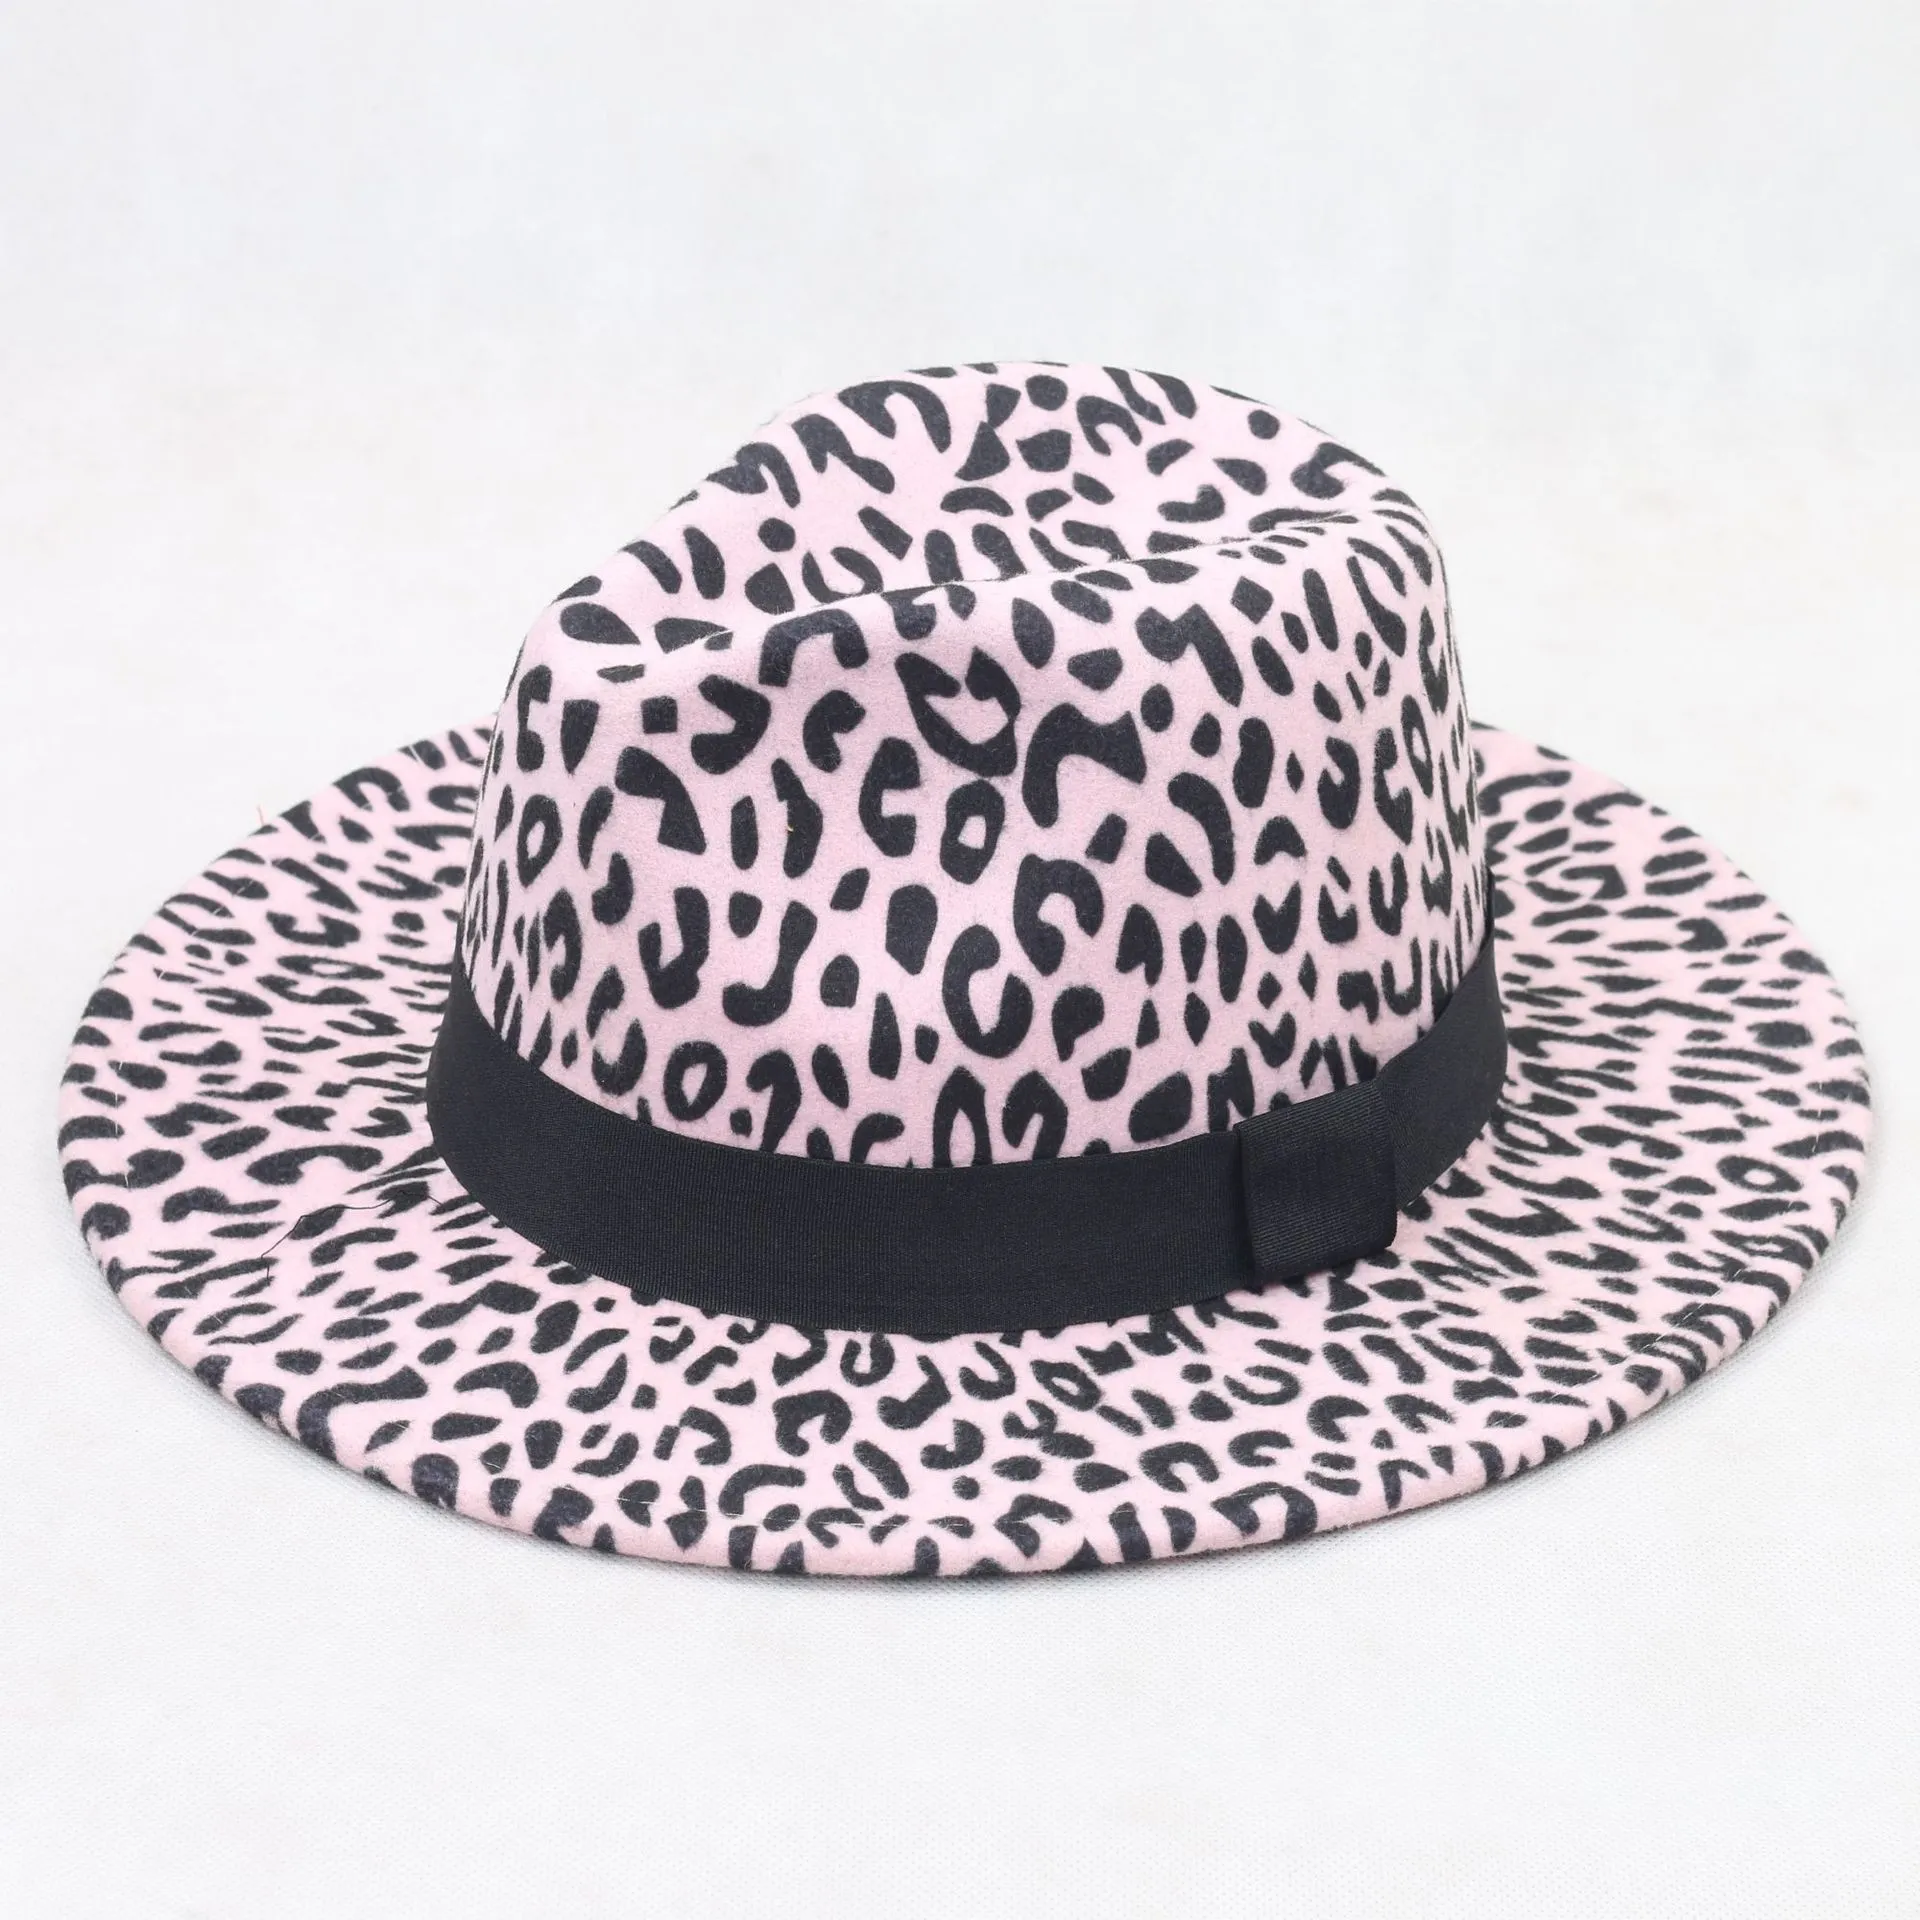 Faux Wolle Leopard Fedora Hüte für Frauen Männer Party Festival Mode Filz Jazz Hut Breite Krempe Panama Goth Top Vintage hochzeit Hut5950663